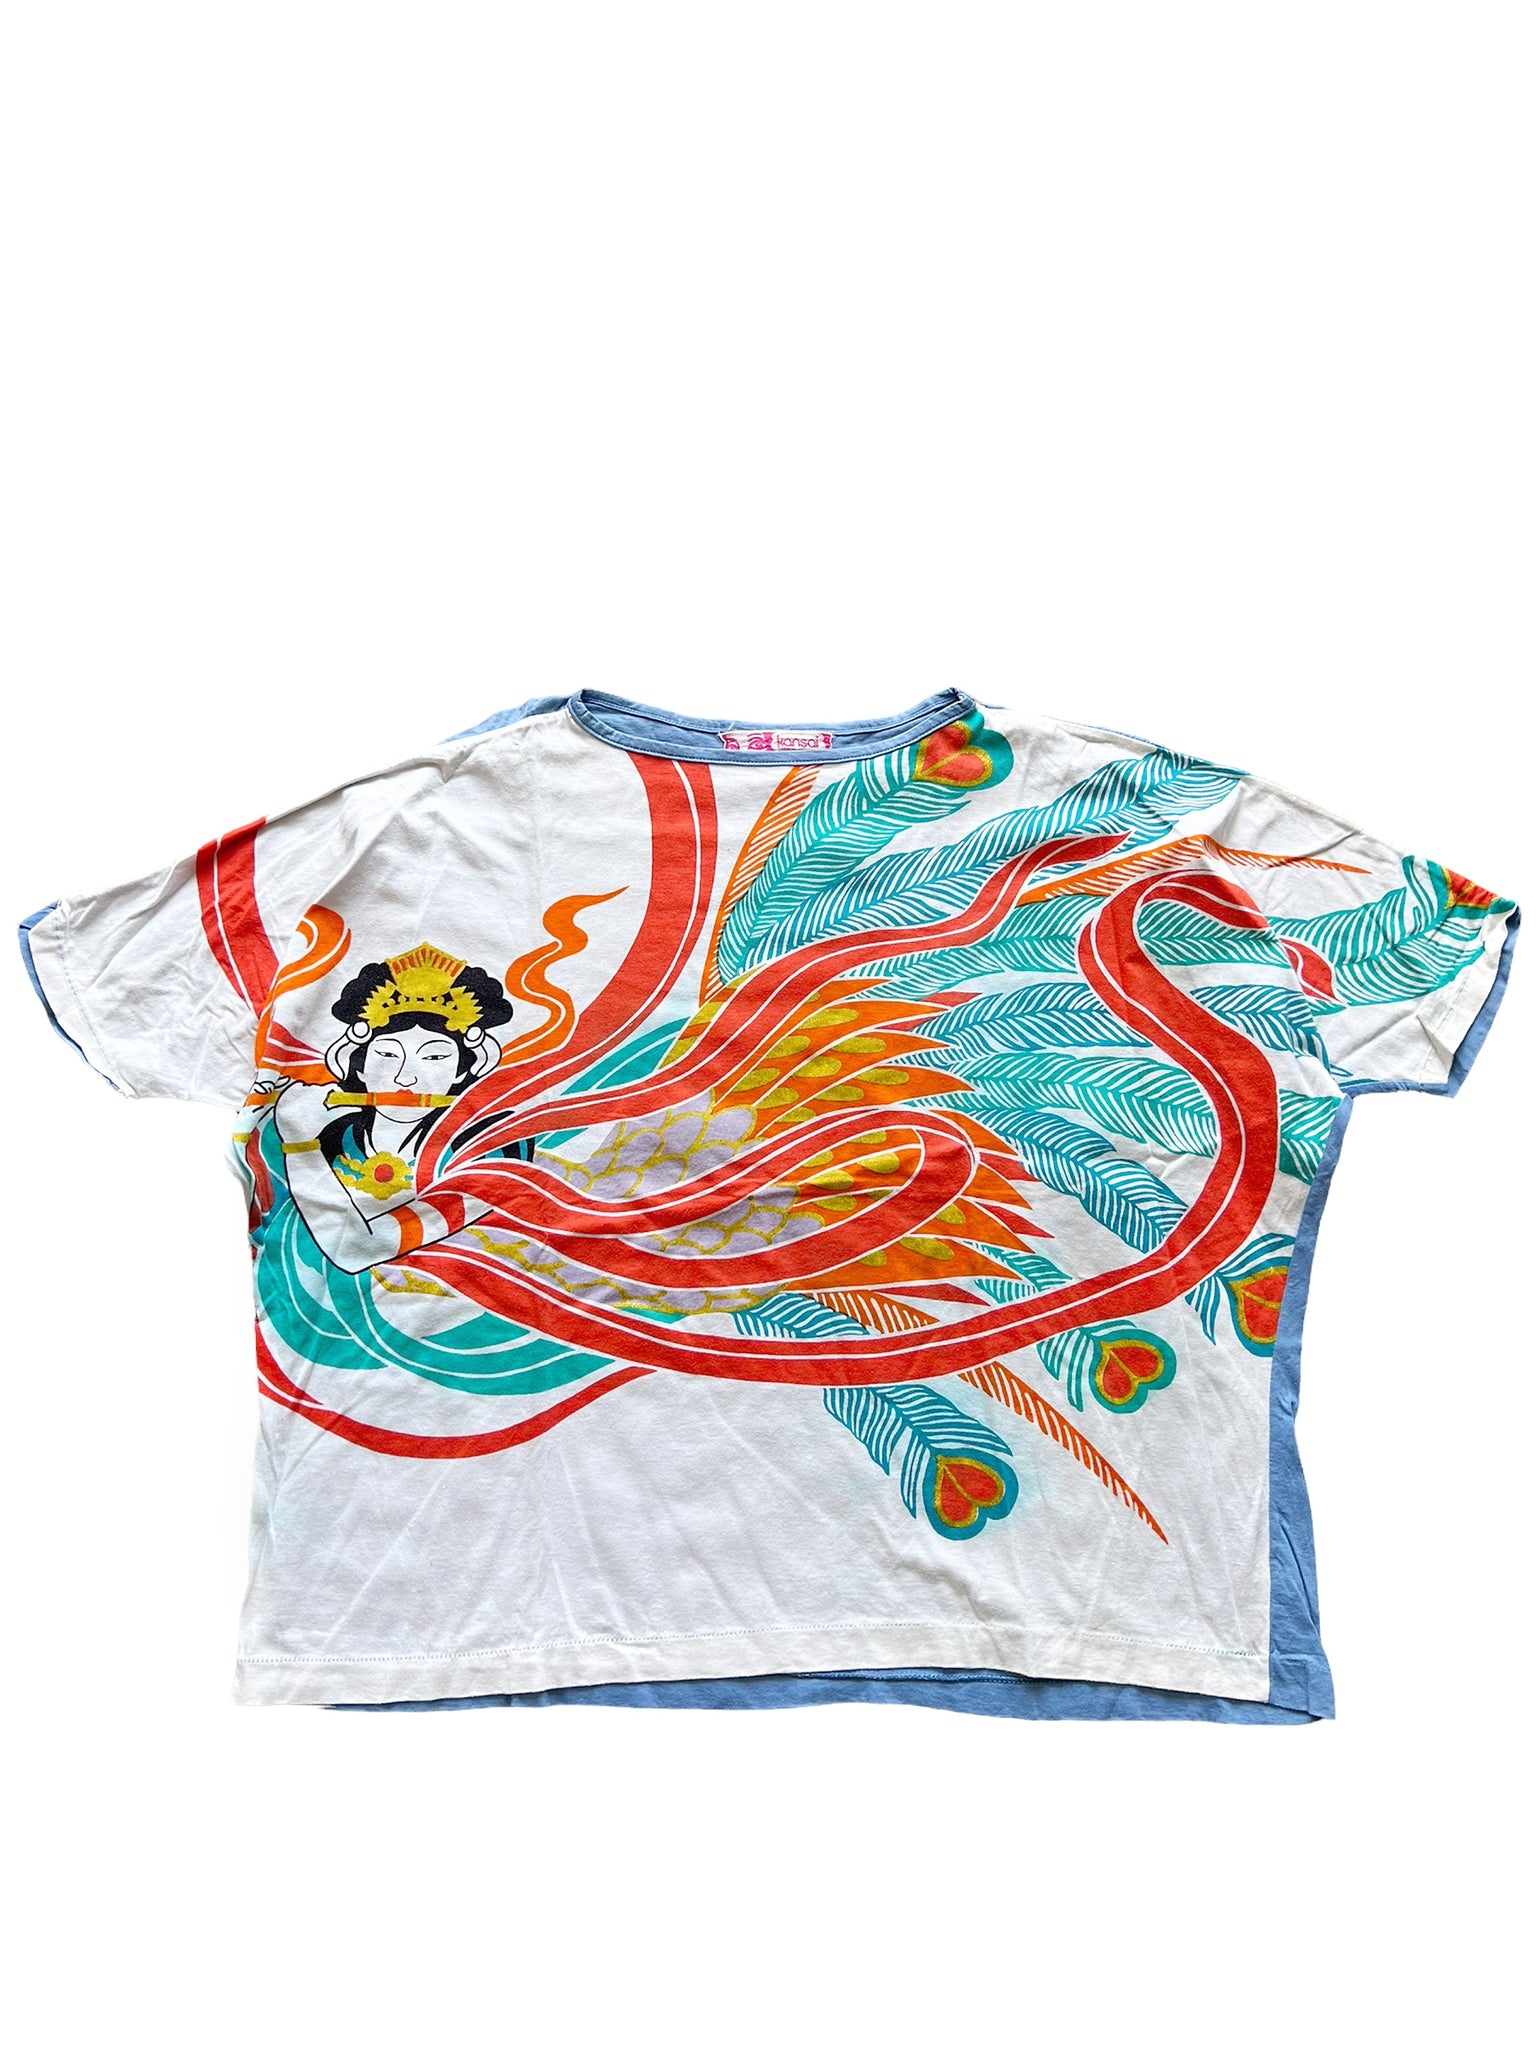 80’s Spirit Art Shirt